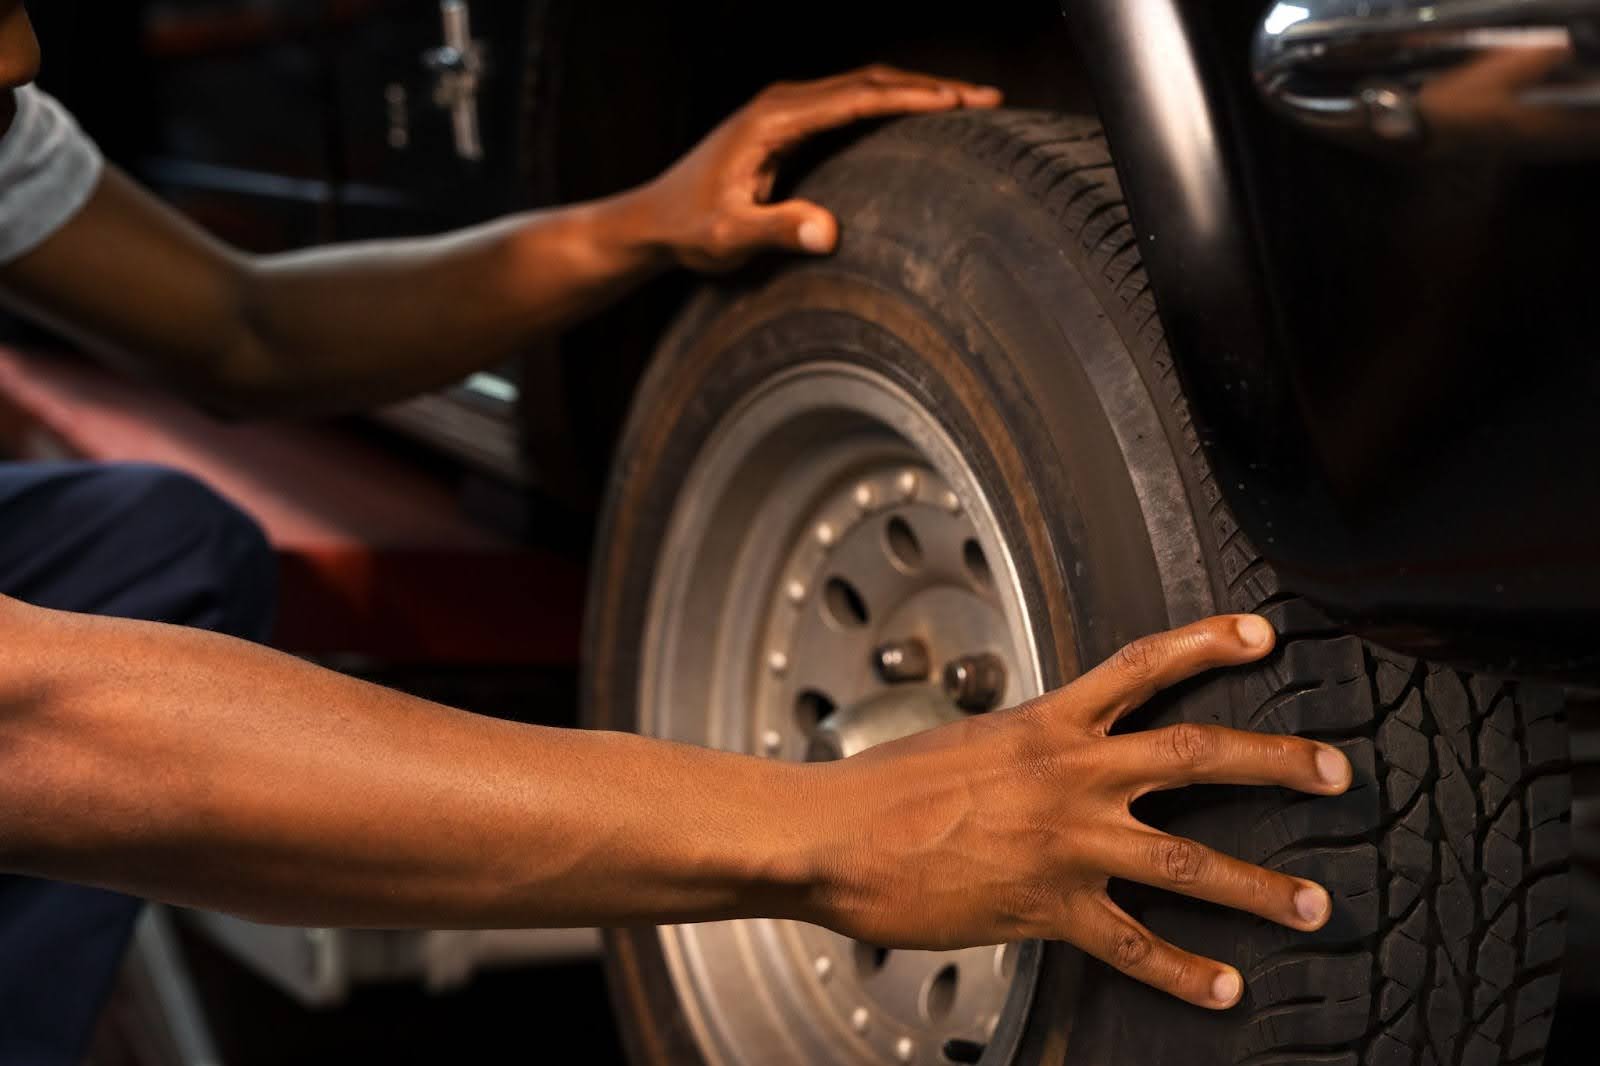 Na imagem um homem está abaixado com as mãos na roda de um carro preto, verificando se o pneu está furado.